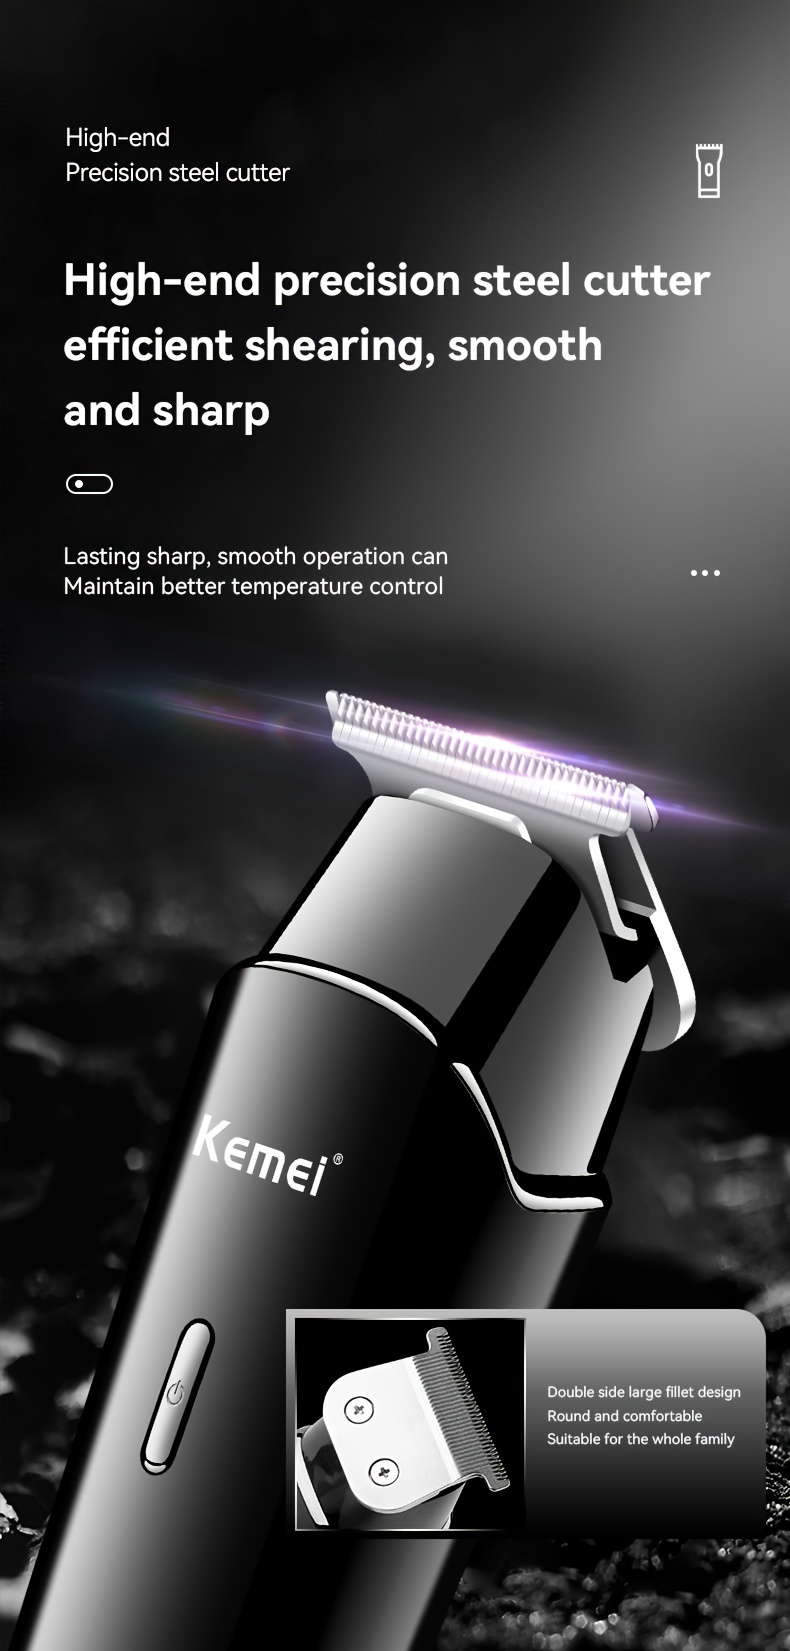 Kemei KM-1113 Hair Clipper and Beard Trimmer for Men - Gear Exact